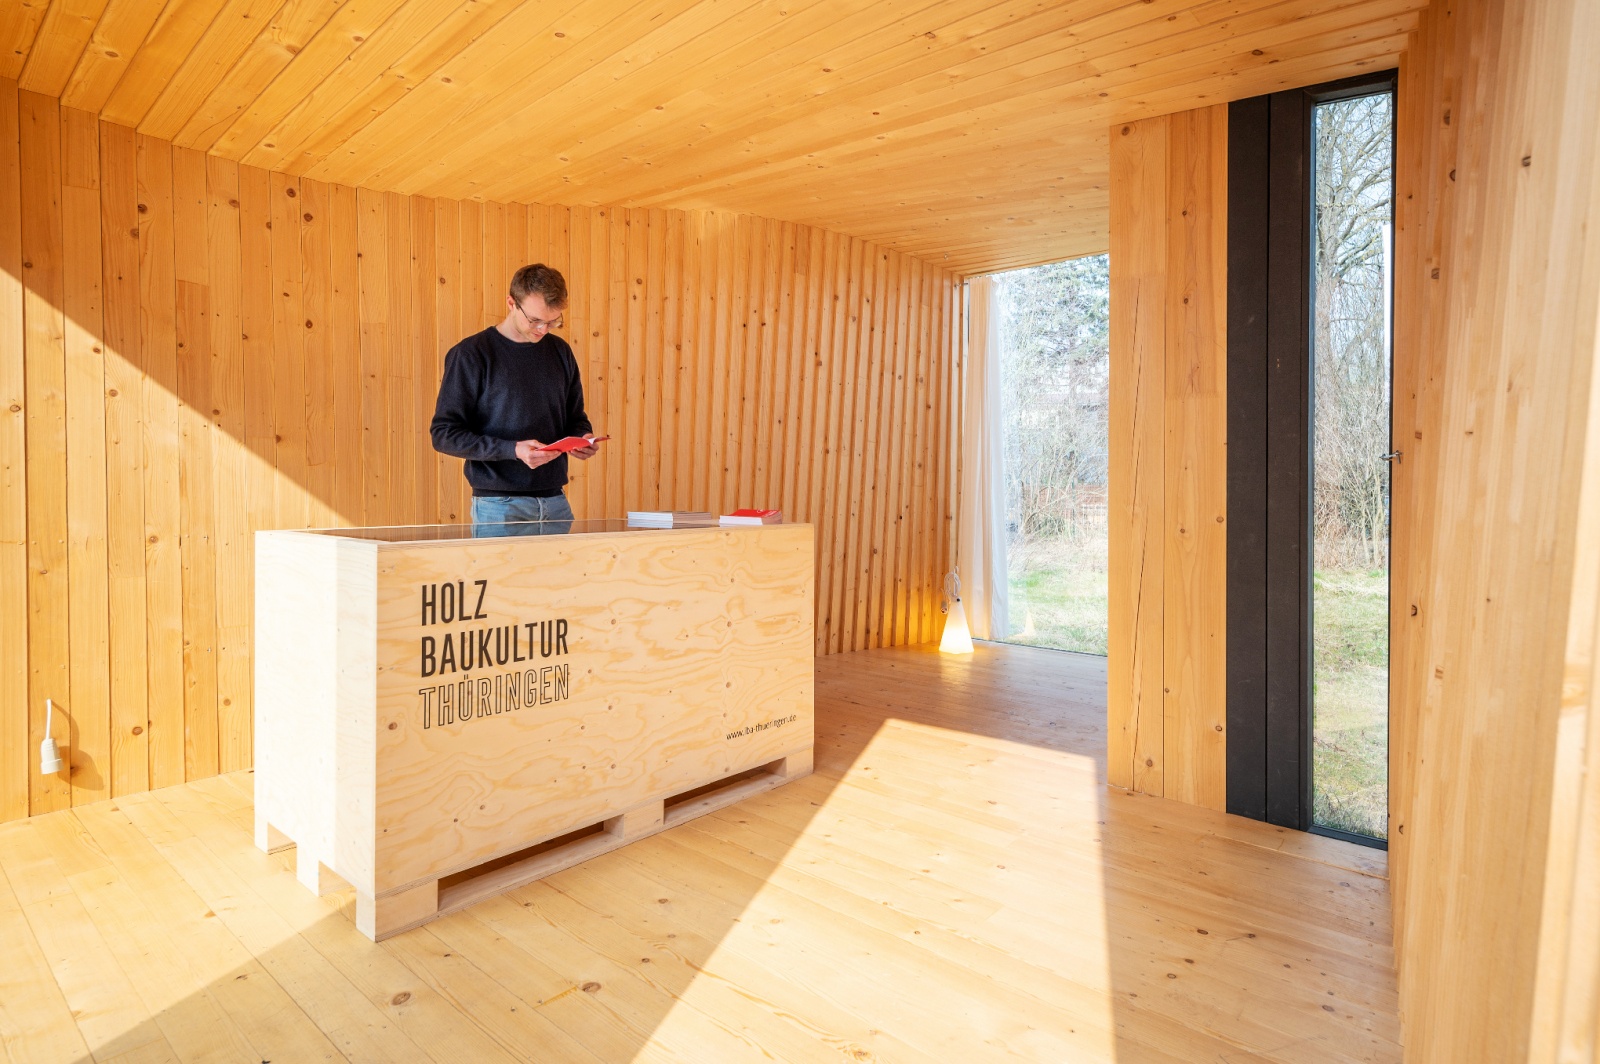 Timber Prototype House, Nutzung als Ausstellungsraum für die Initiative "HolzBauKultur", Bild: Thomas Müller, Weimar